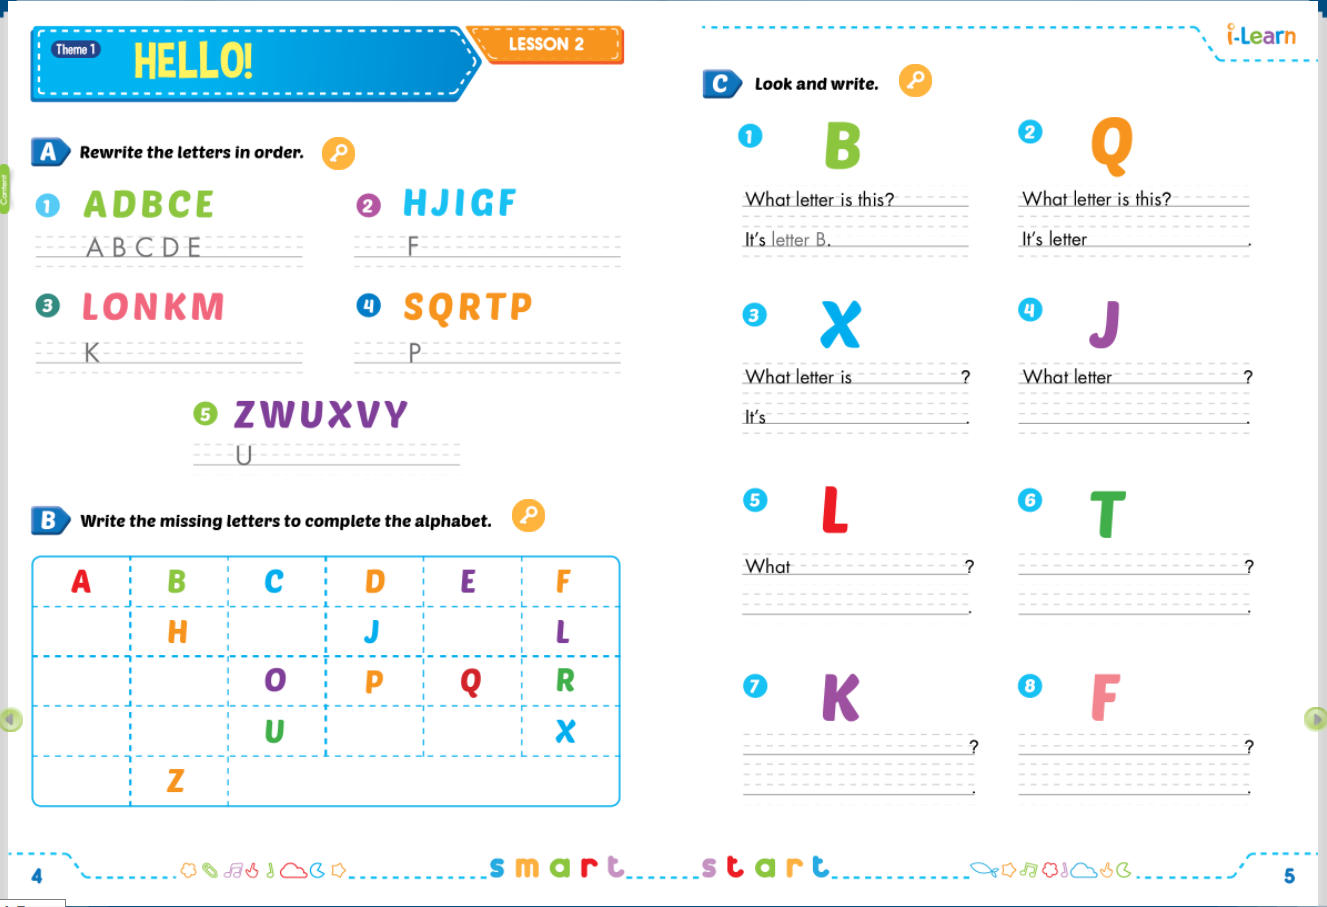 Hình ảnh [E-BOOK] i-Learn Smart Start Grade 3 Sách mềm sách bài tập